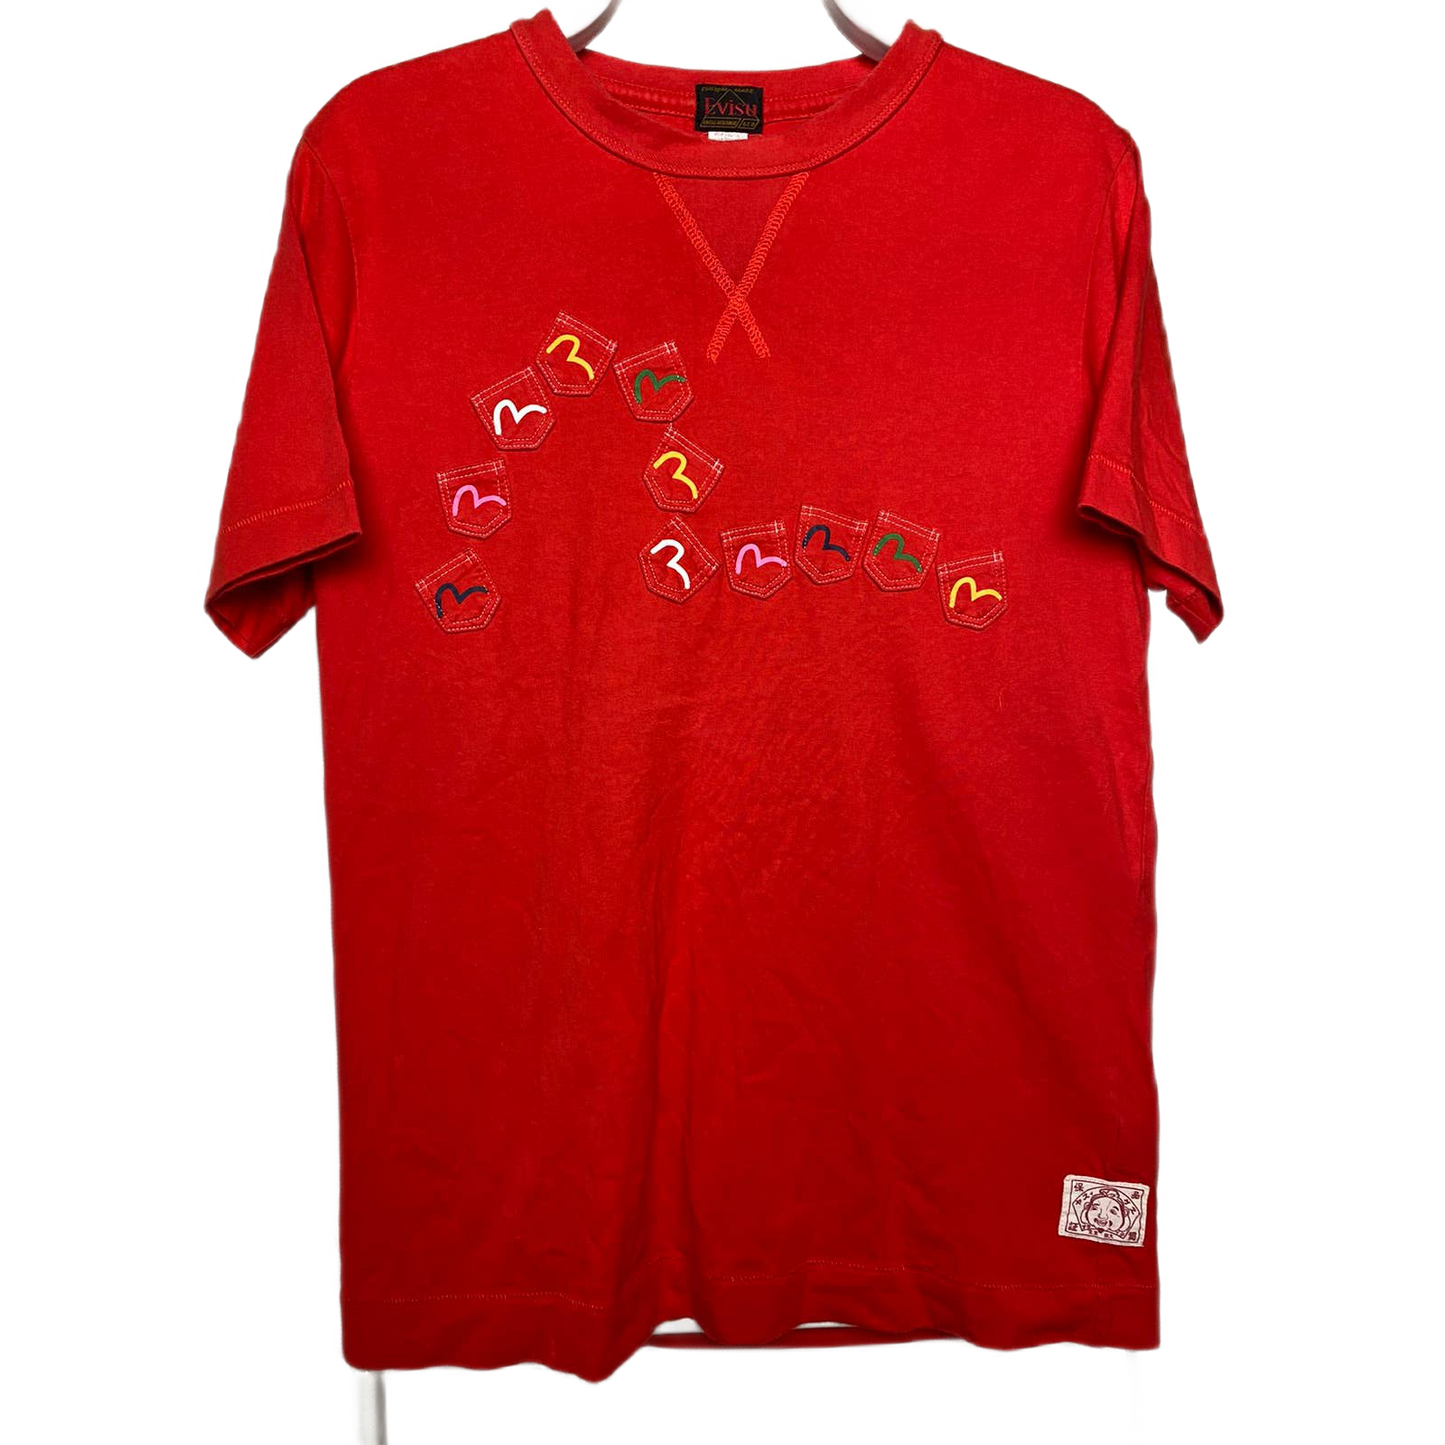 Evisu Japan vintage multi pocket red T-shirt